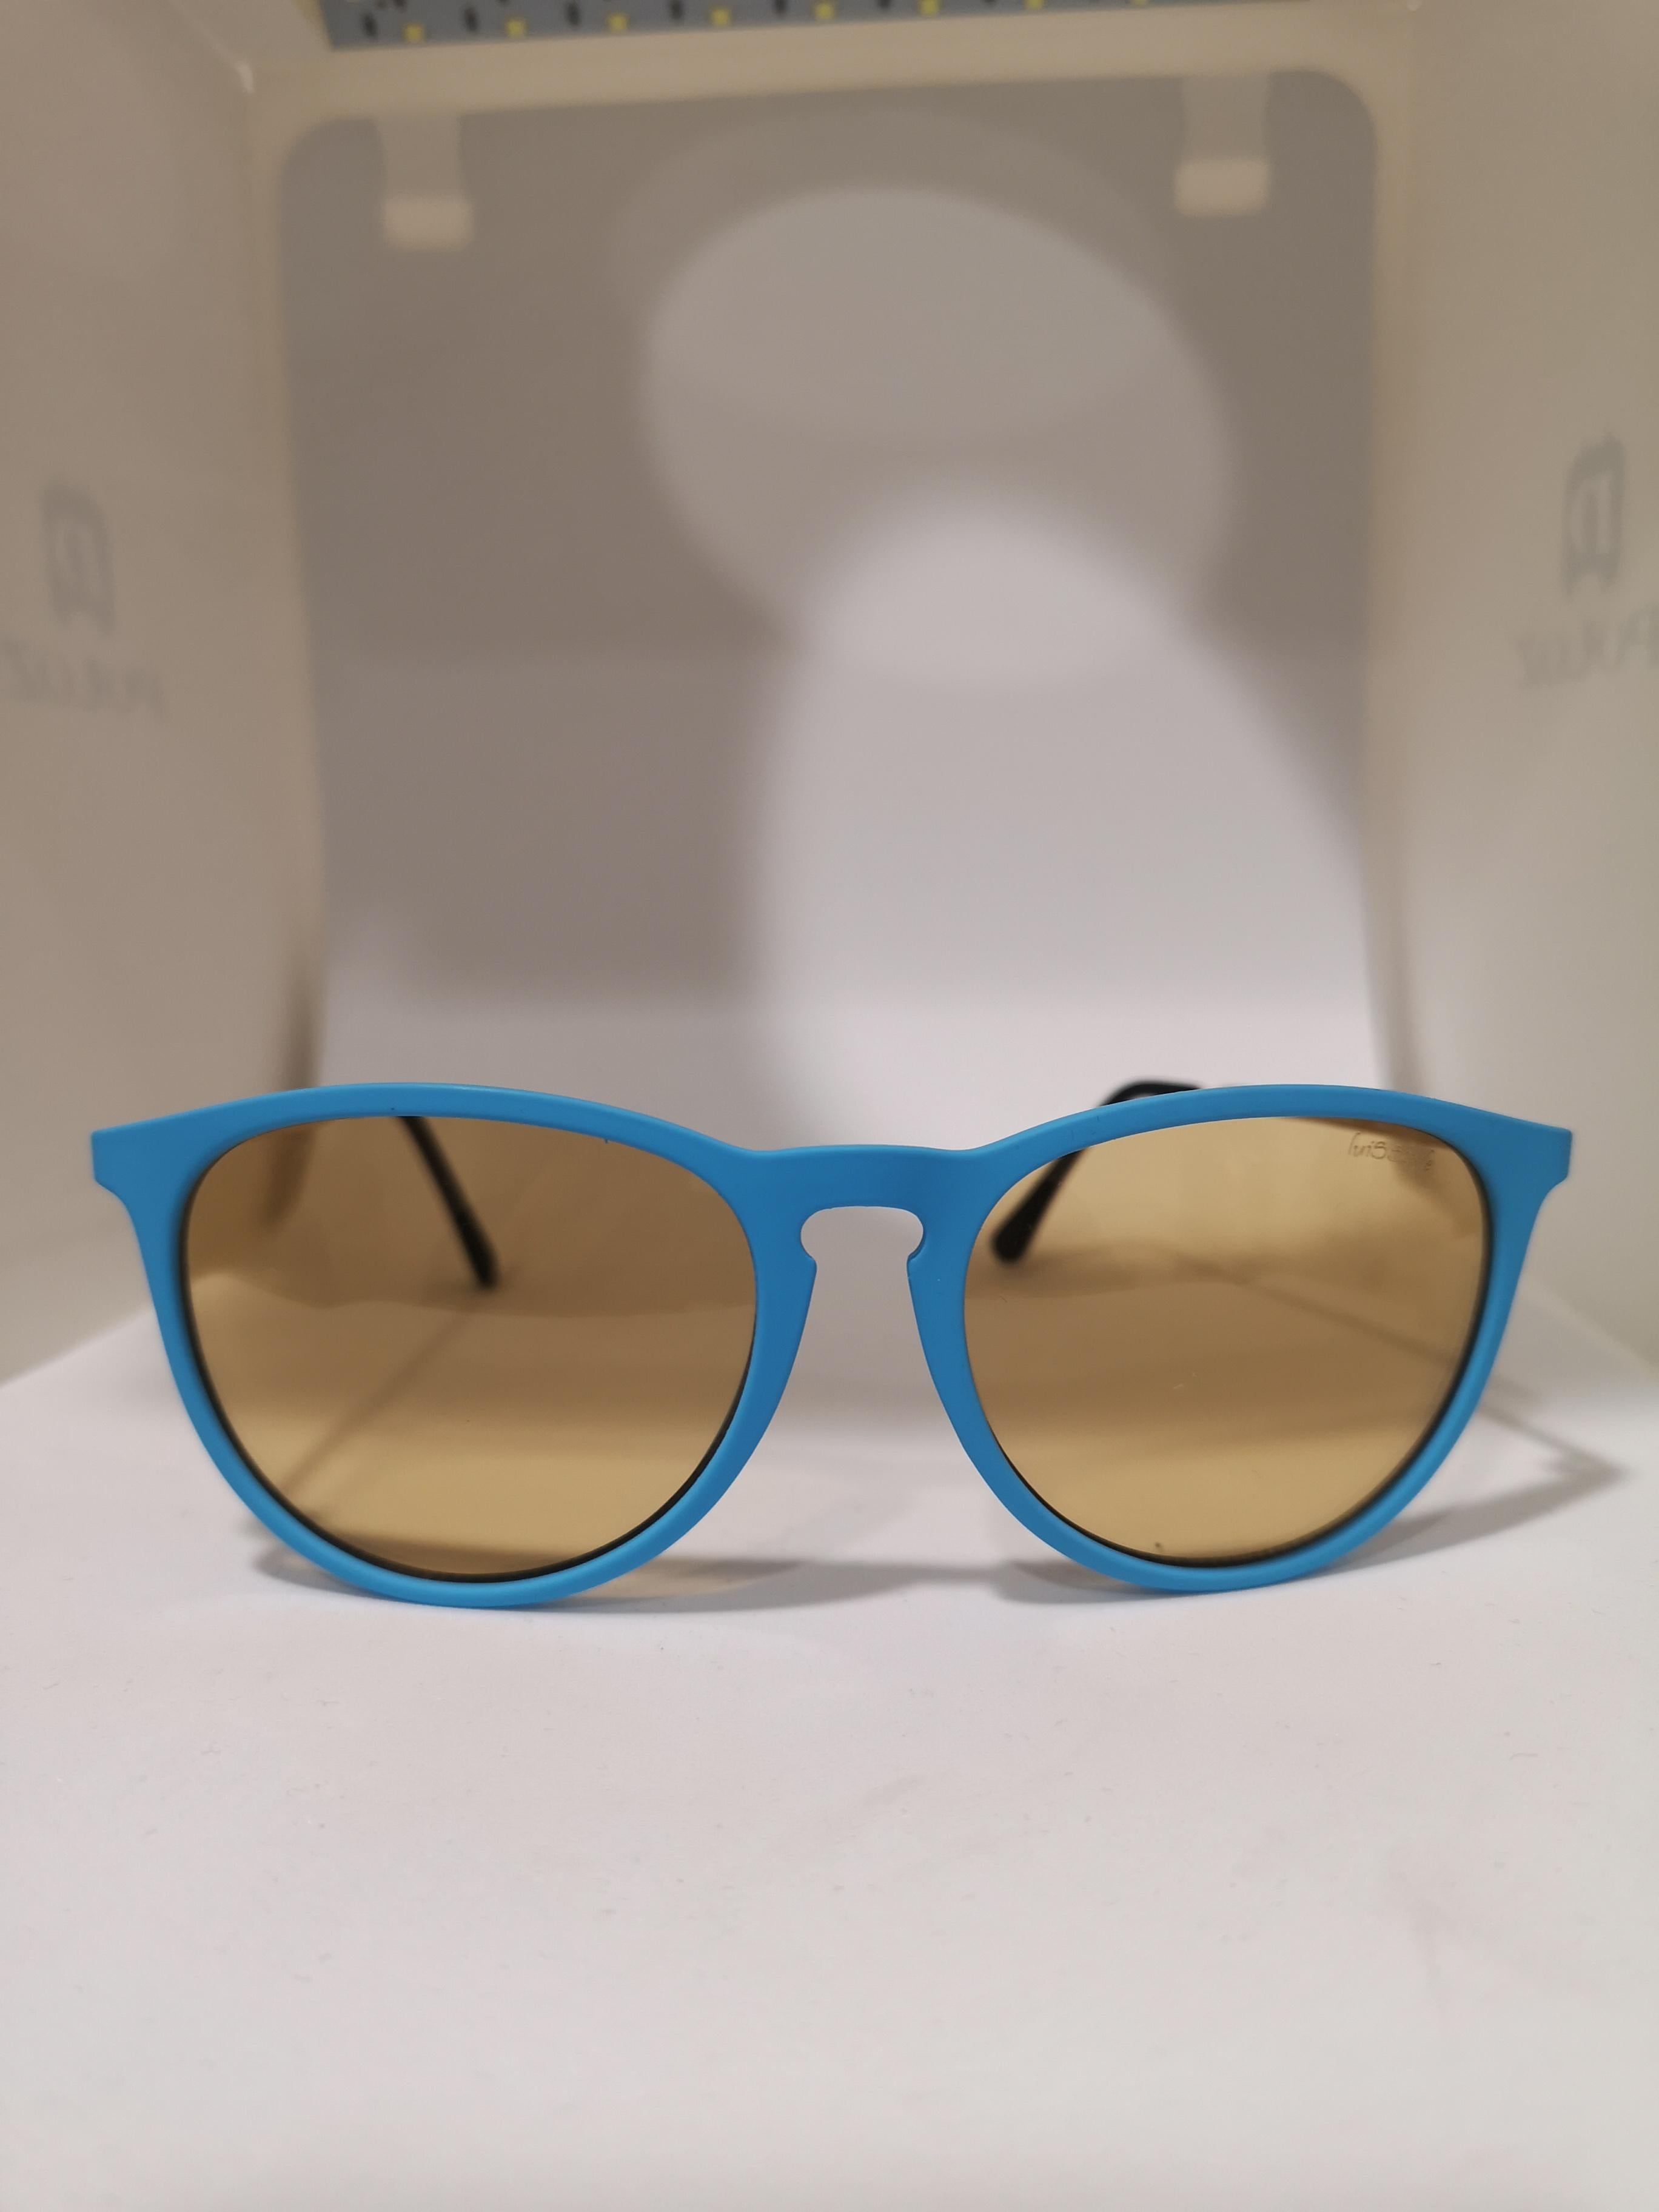 Women's or Men's Luisstyle blue light orange lens sunglasses NWOT